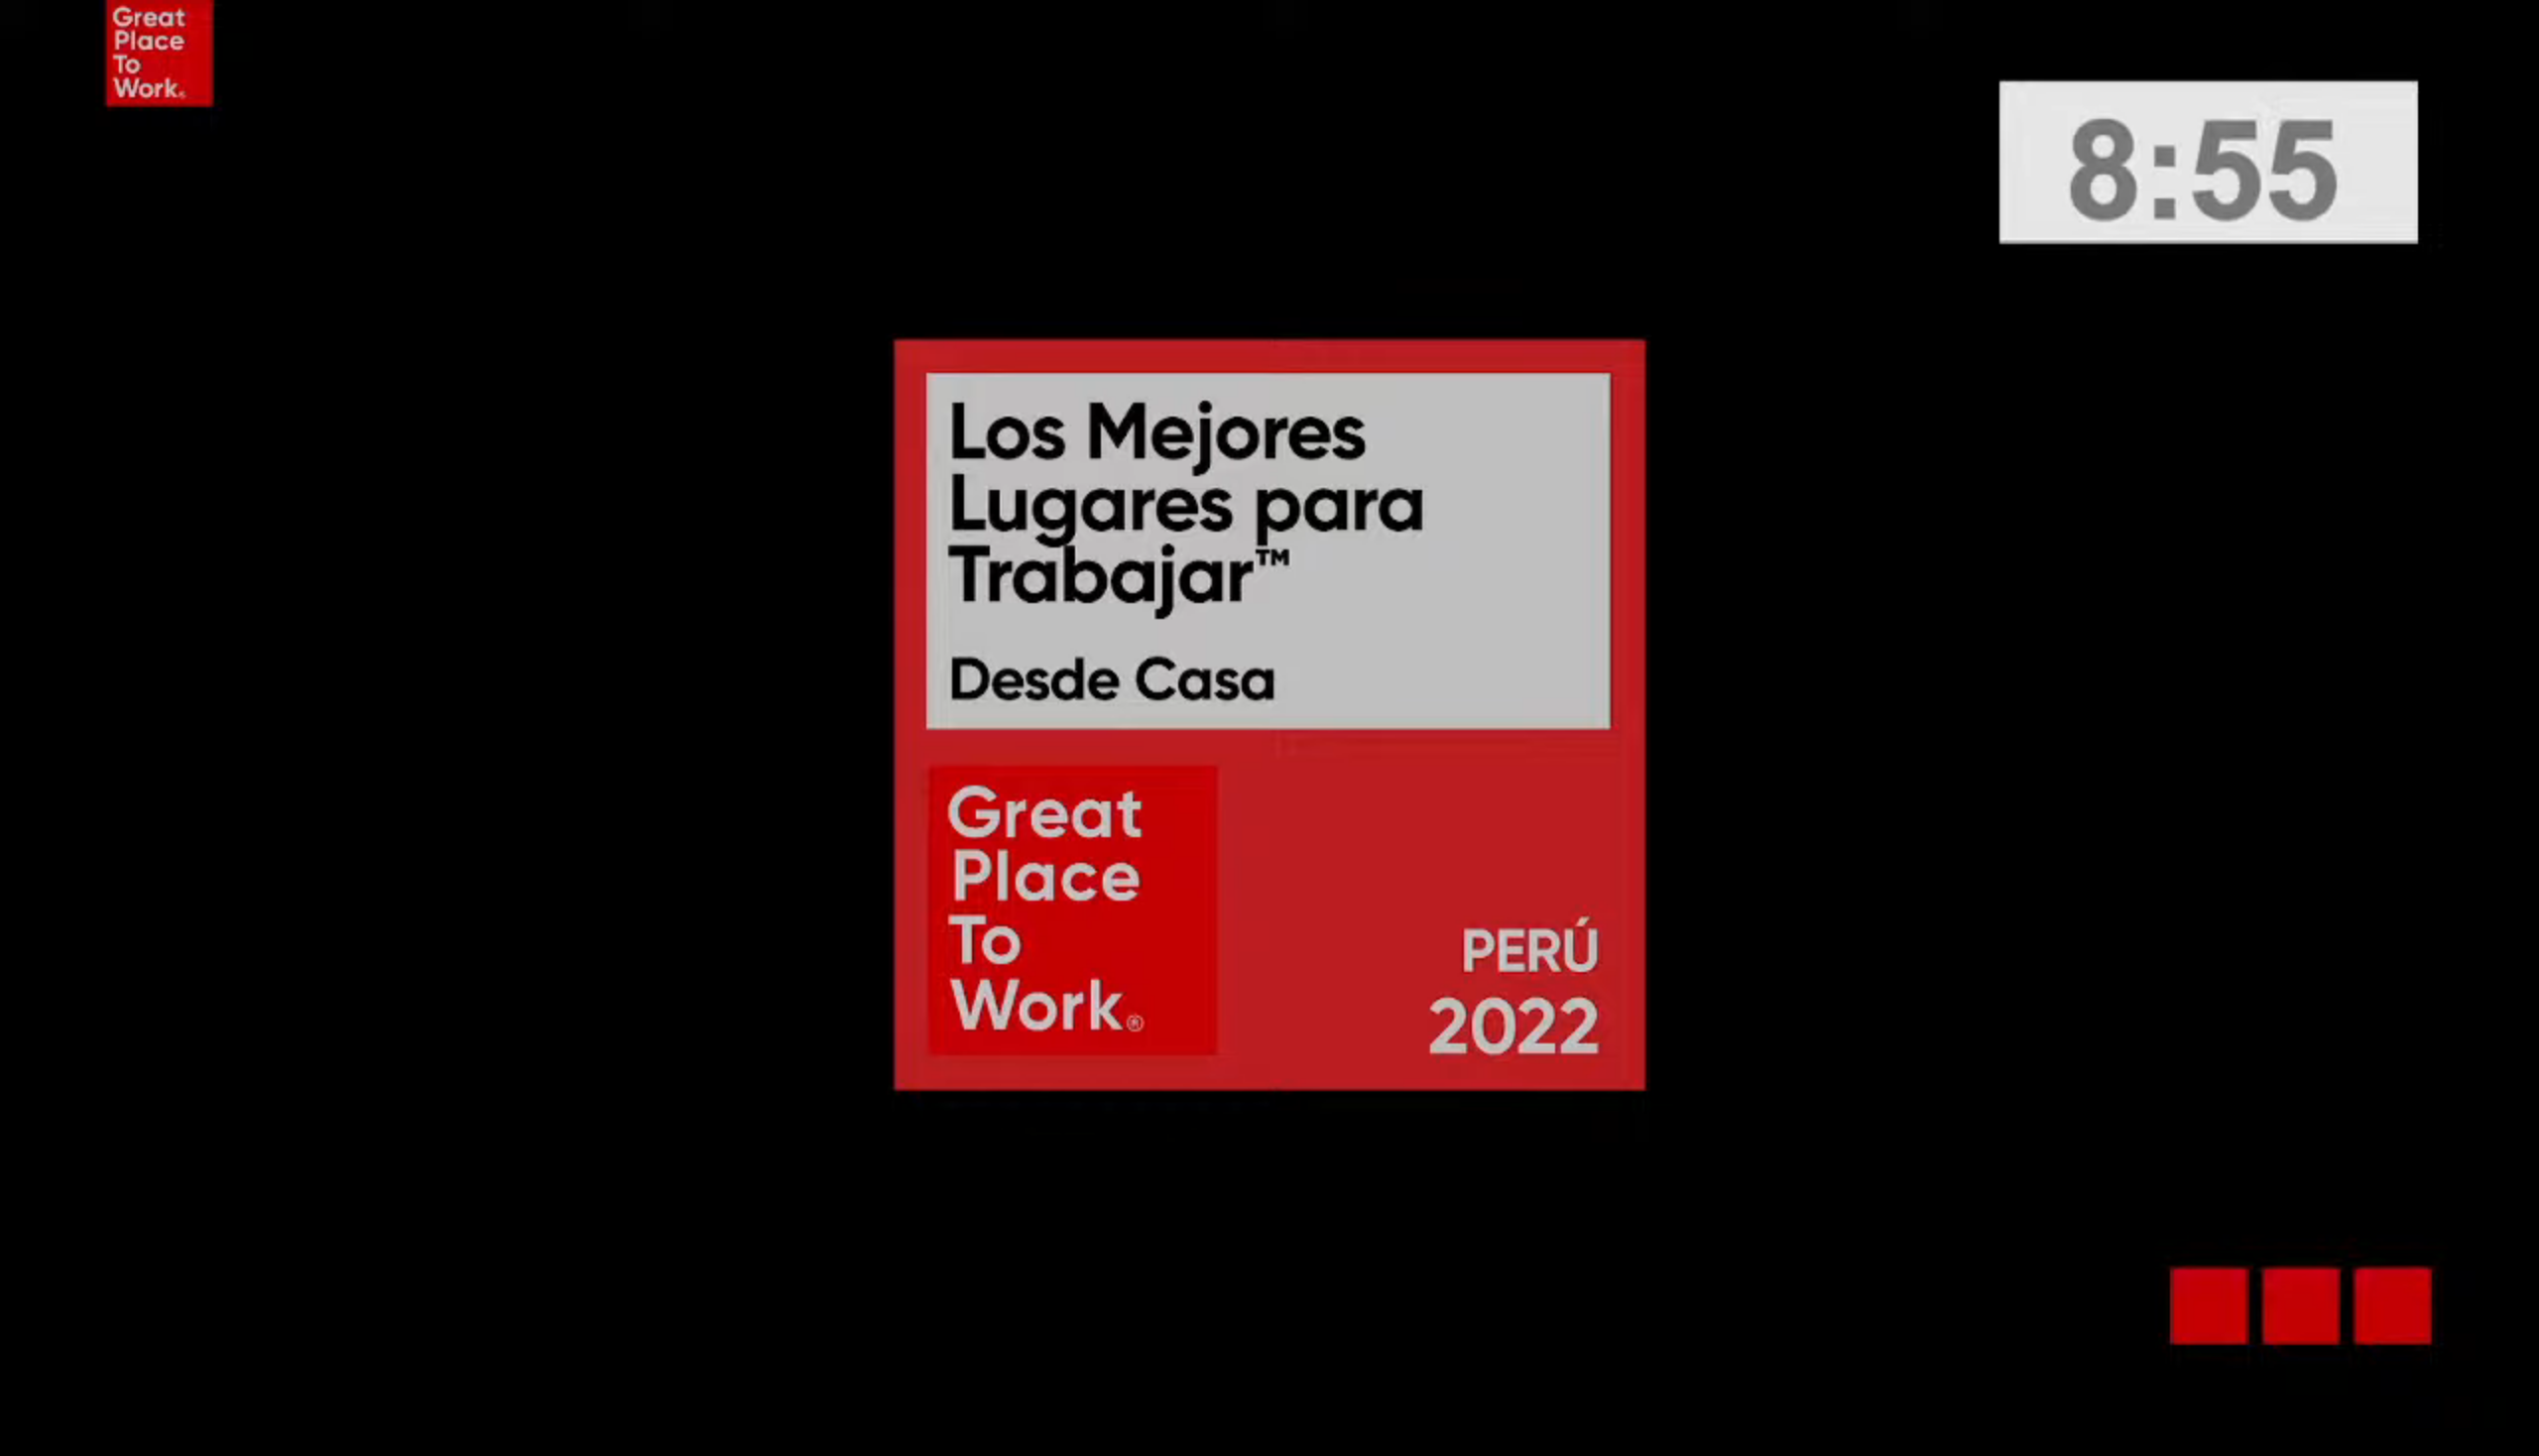 Los Mejores Lugares para Trabajar Desde Casa™ Perú 2022